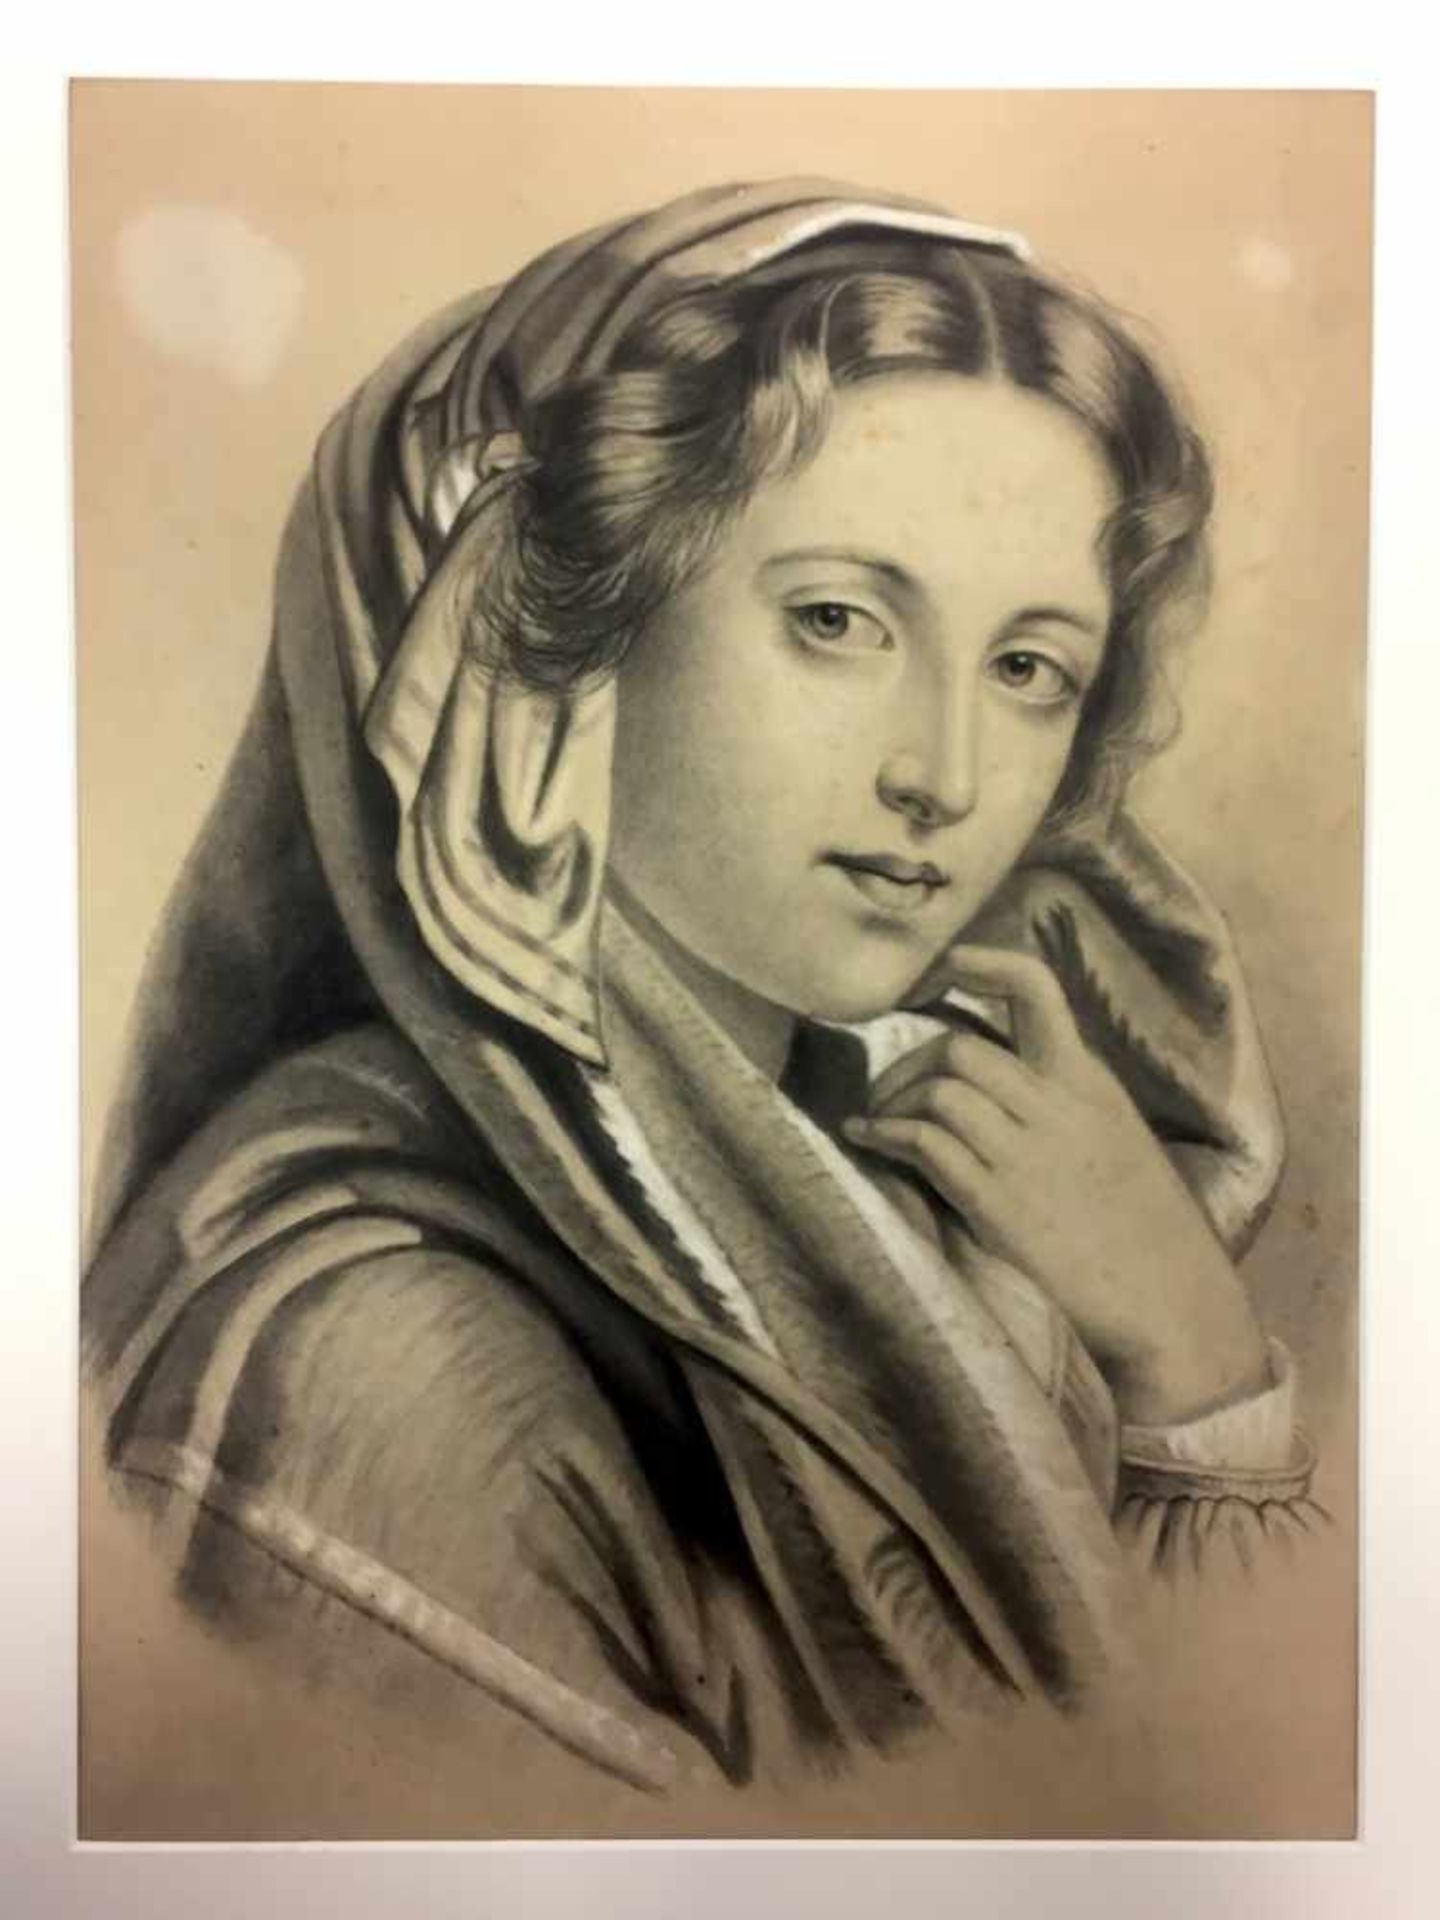 Philippine Guth: "Junge Frau". Pastell auf Karton. 1861.Links unten von Künstlerhand in Tusche